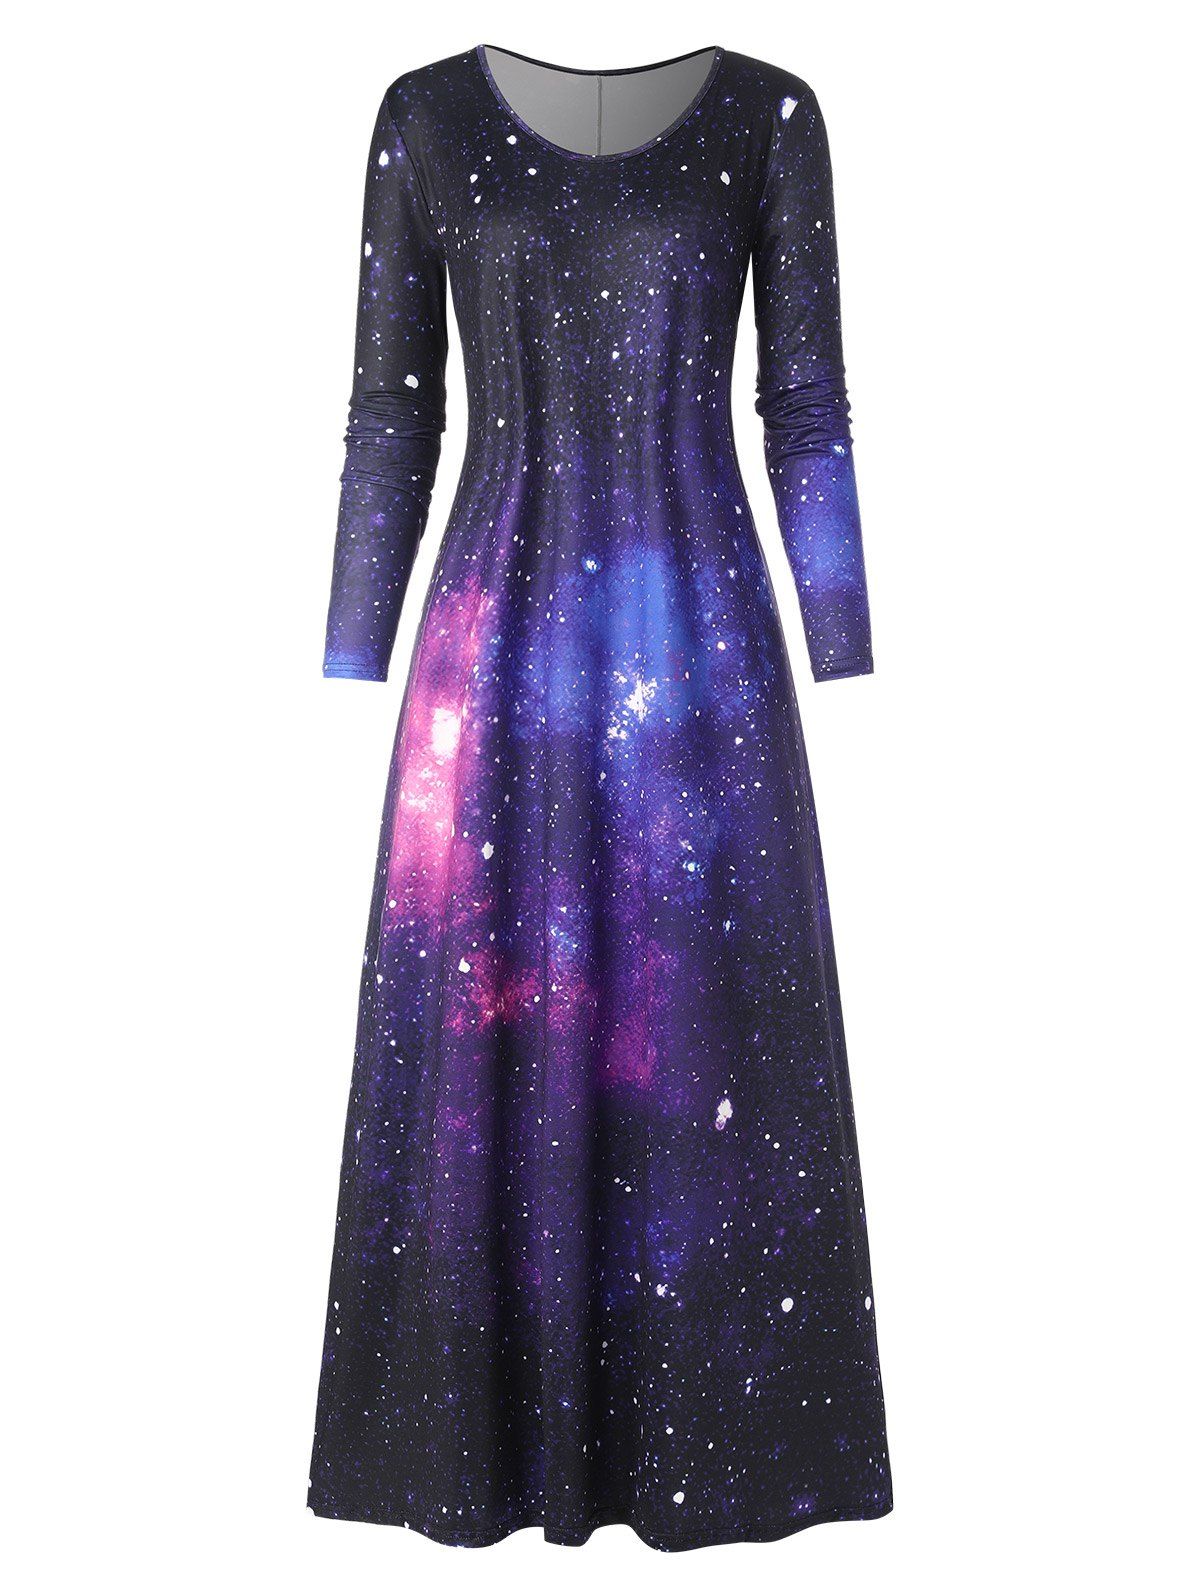 Robe Longue Galaxie à Manches Longues - multicolor XL